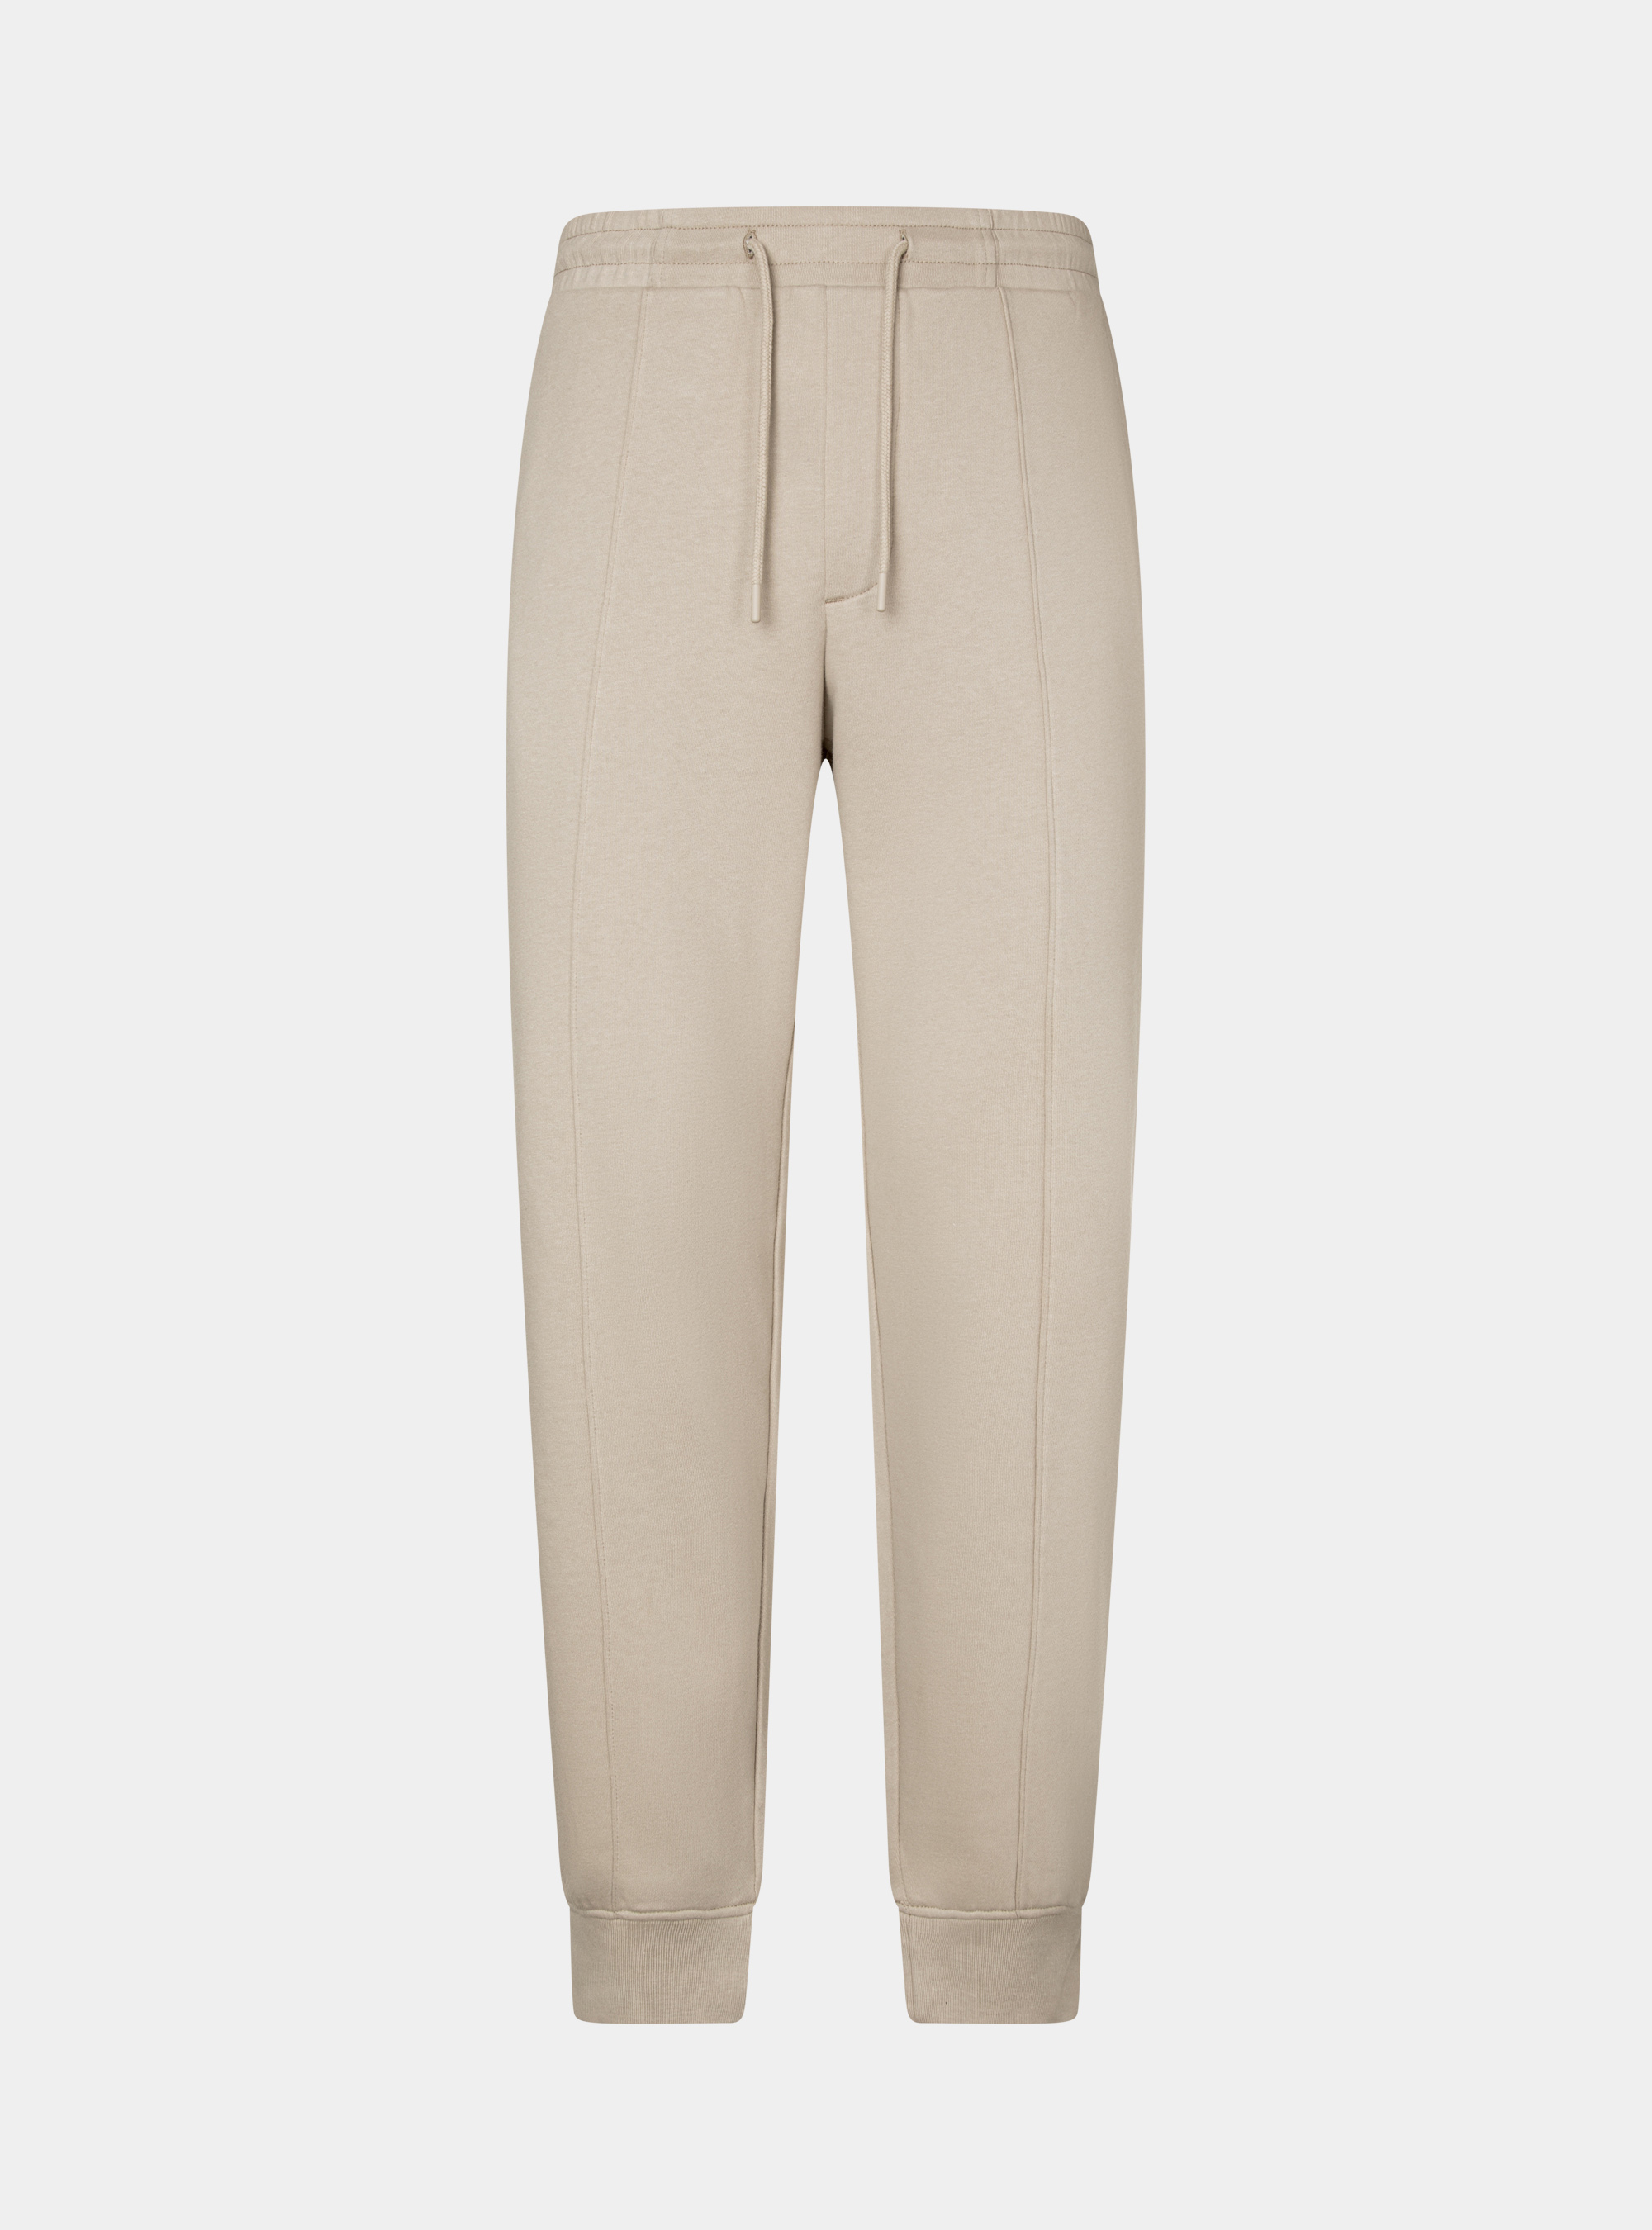 Fleece trousers | GutteridgeEU | Men's New In